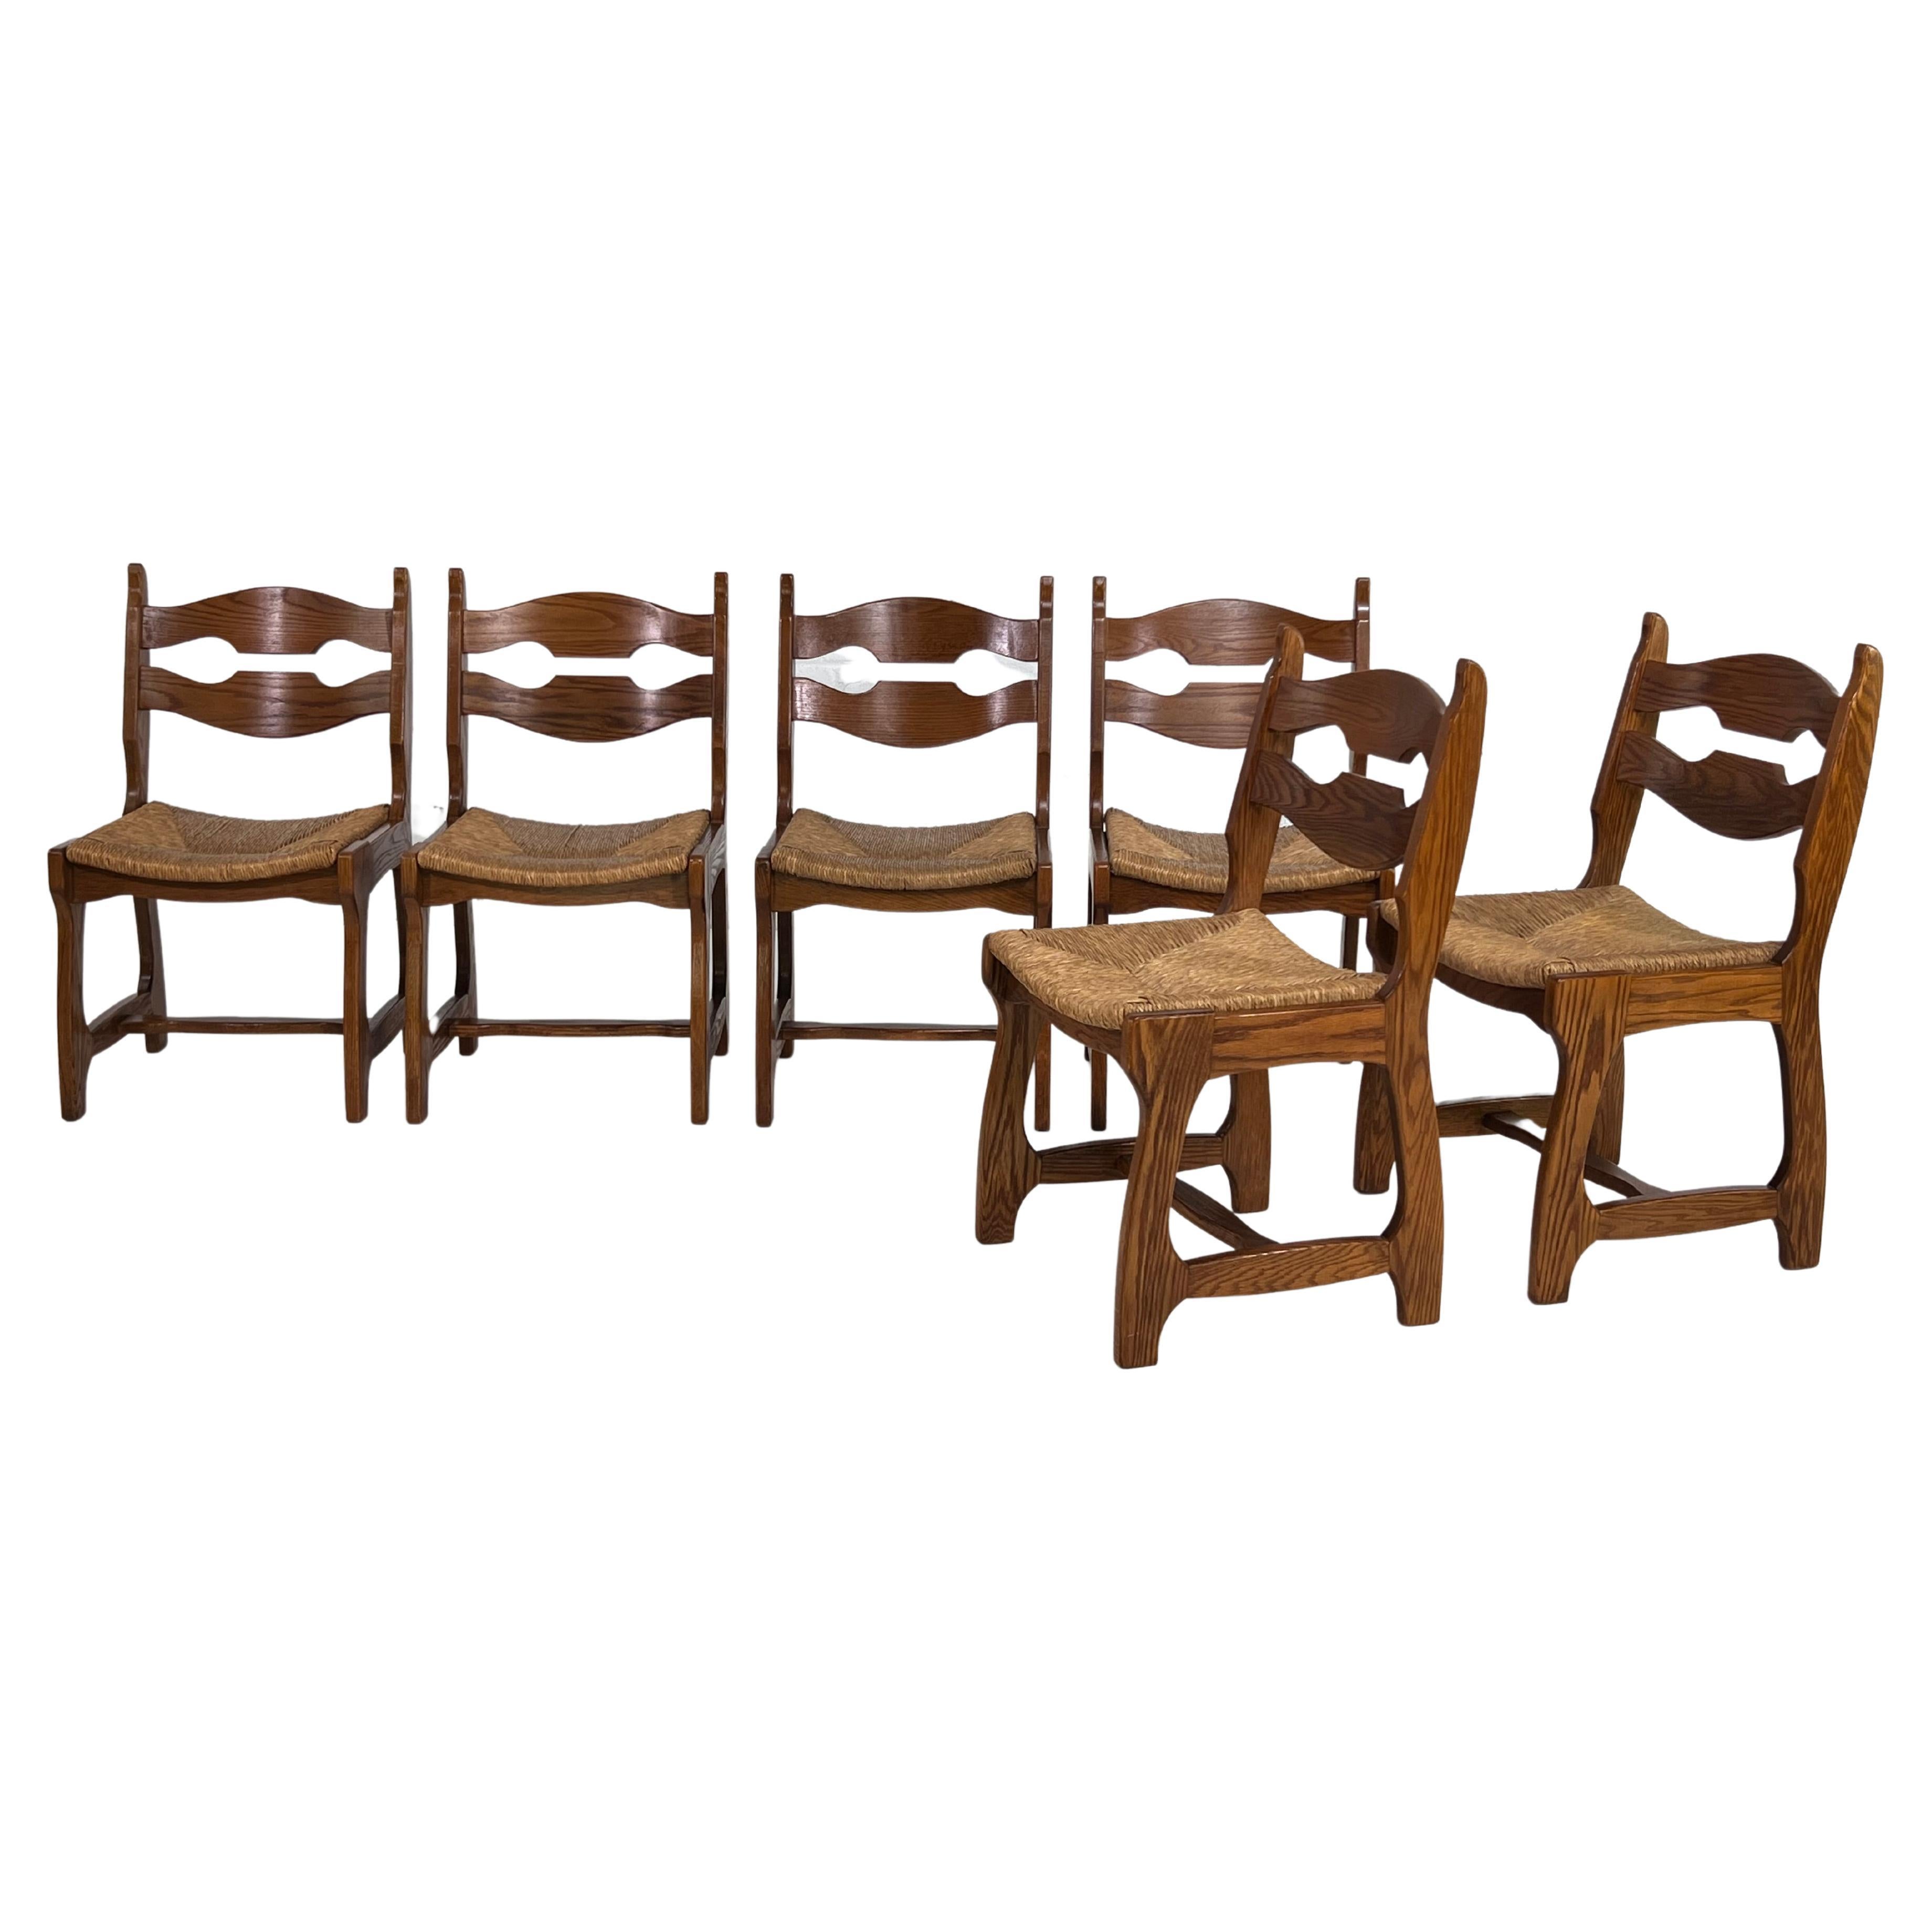 1950er Jahre Design Eiche Holz und geflochtene Strohsitze Satz von 6 Stühlen